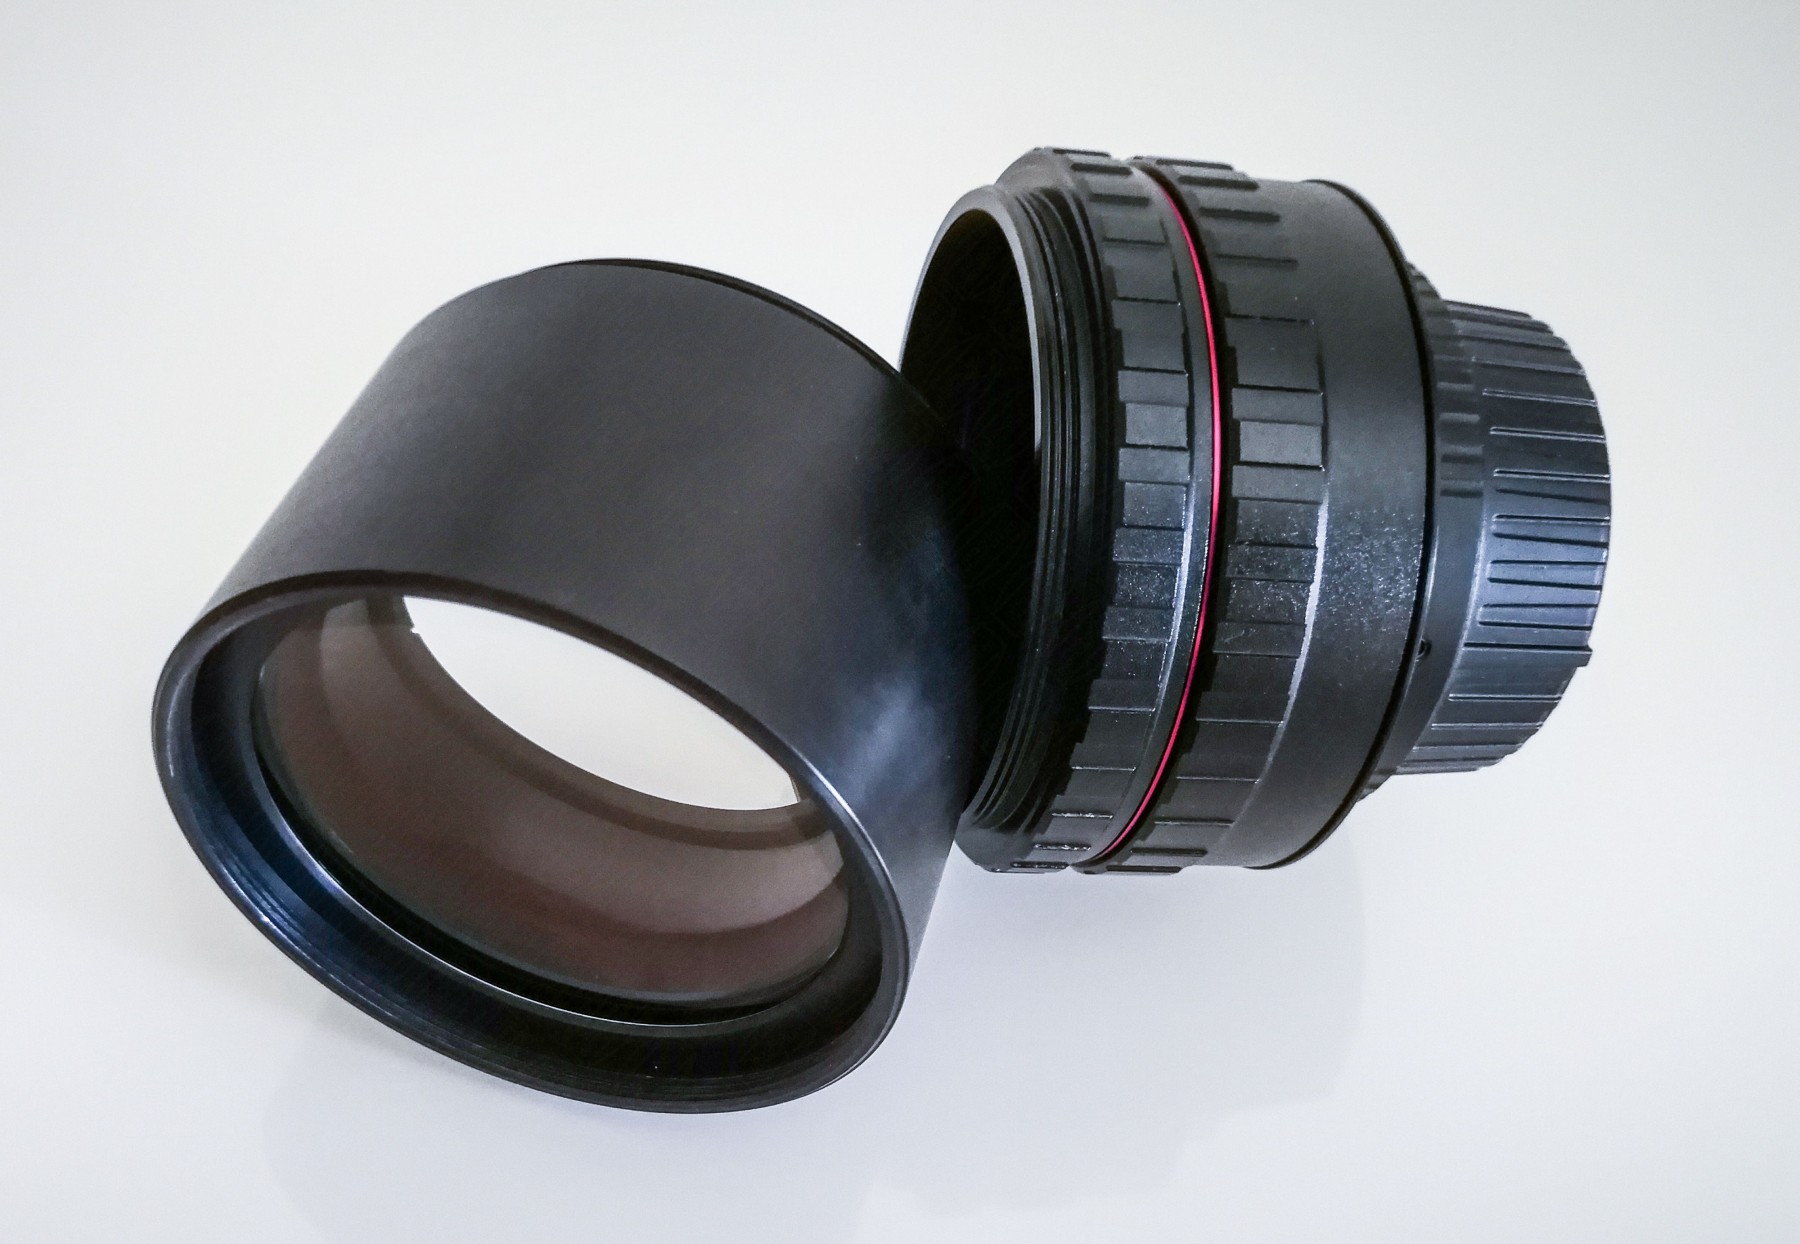 Optionaler Canon Camera Adapter, zusammengestellt aus M68 und T-2 Teilen, nicht im Lieferumfang enthalten